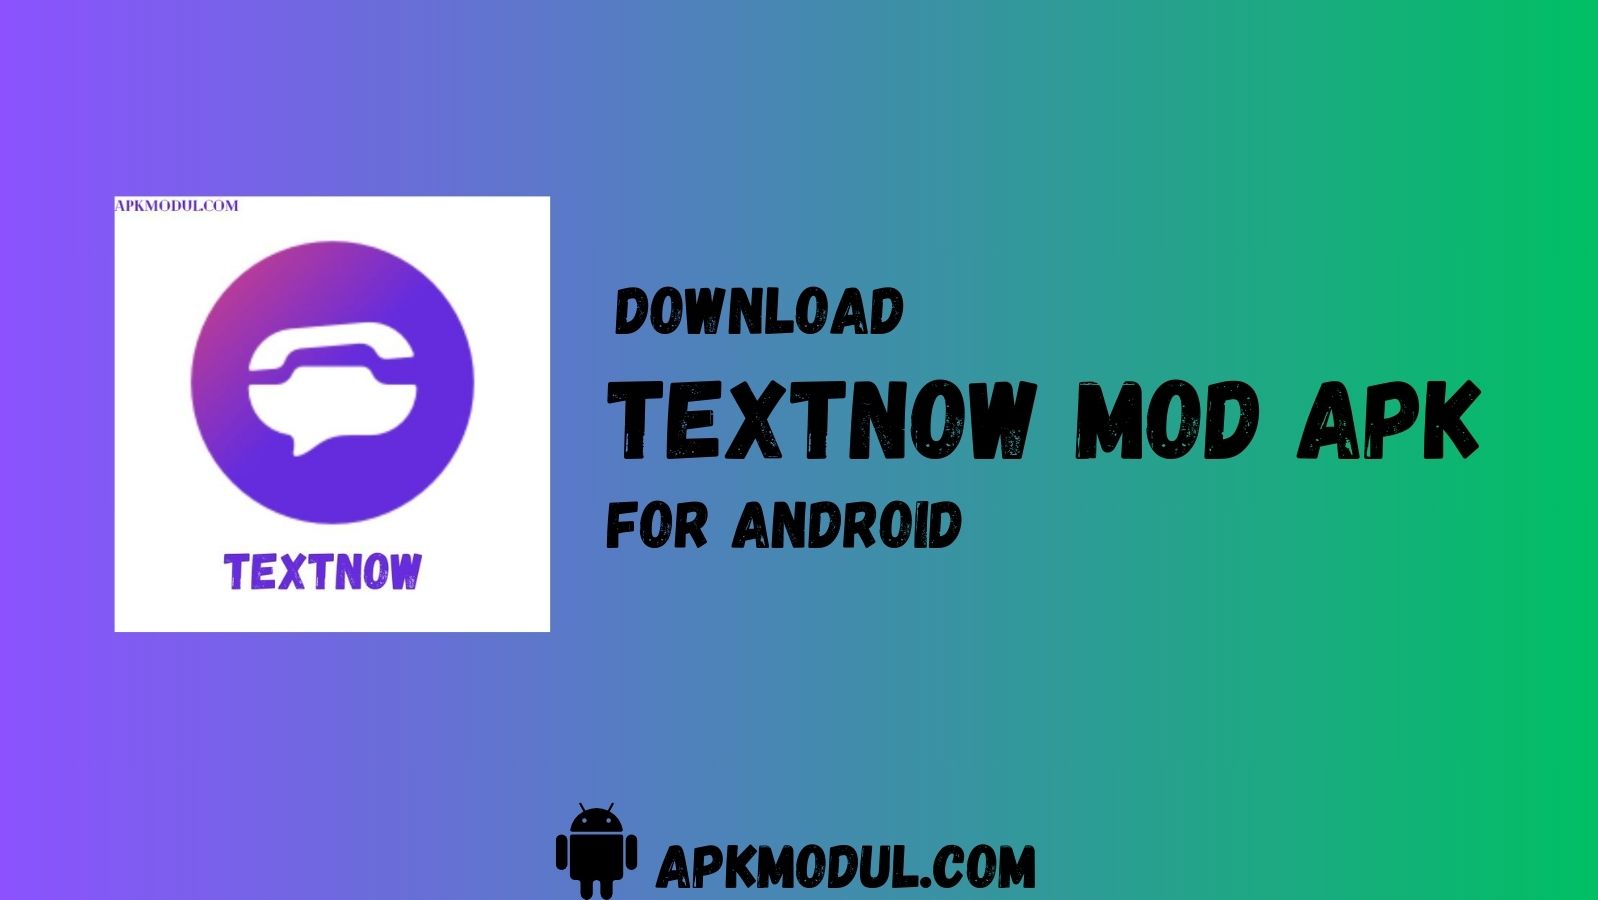 TextNow mod apk